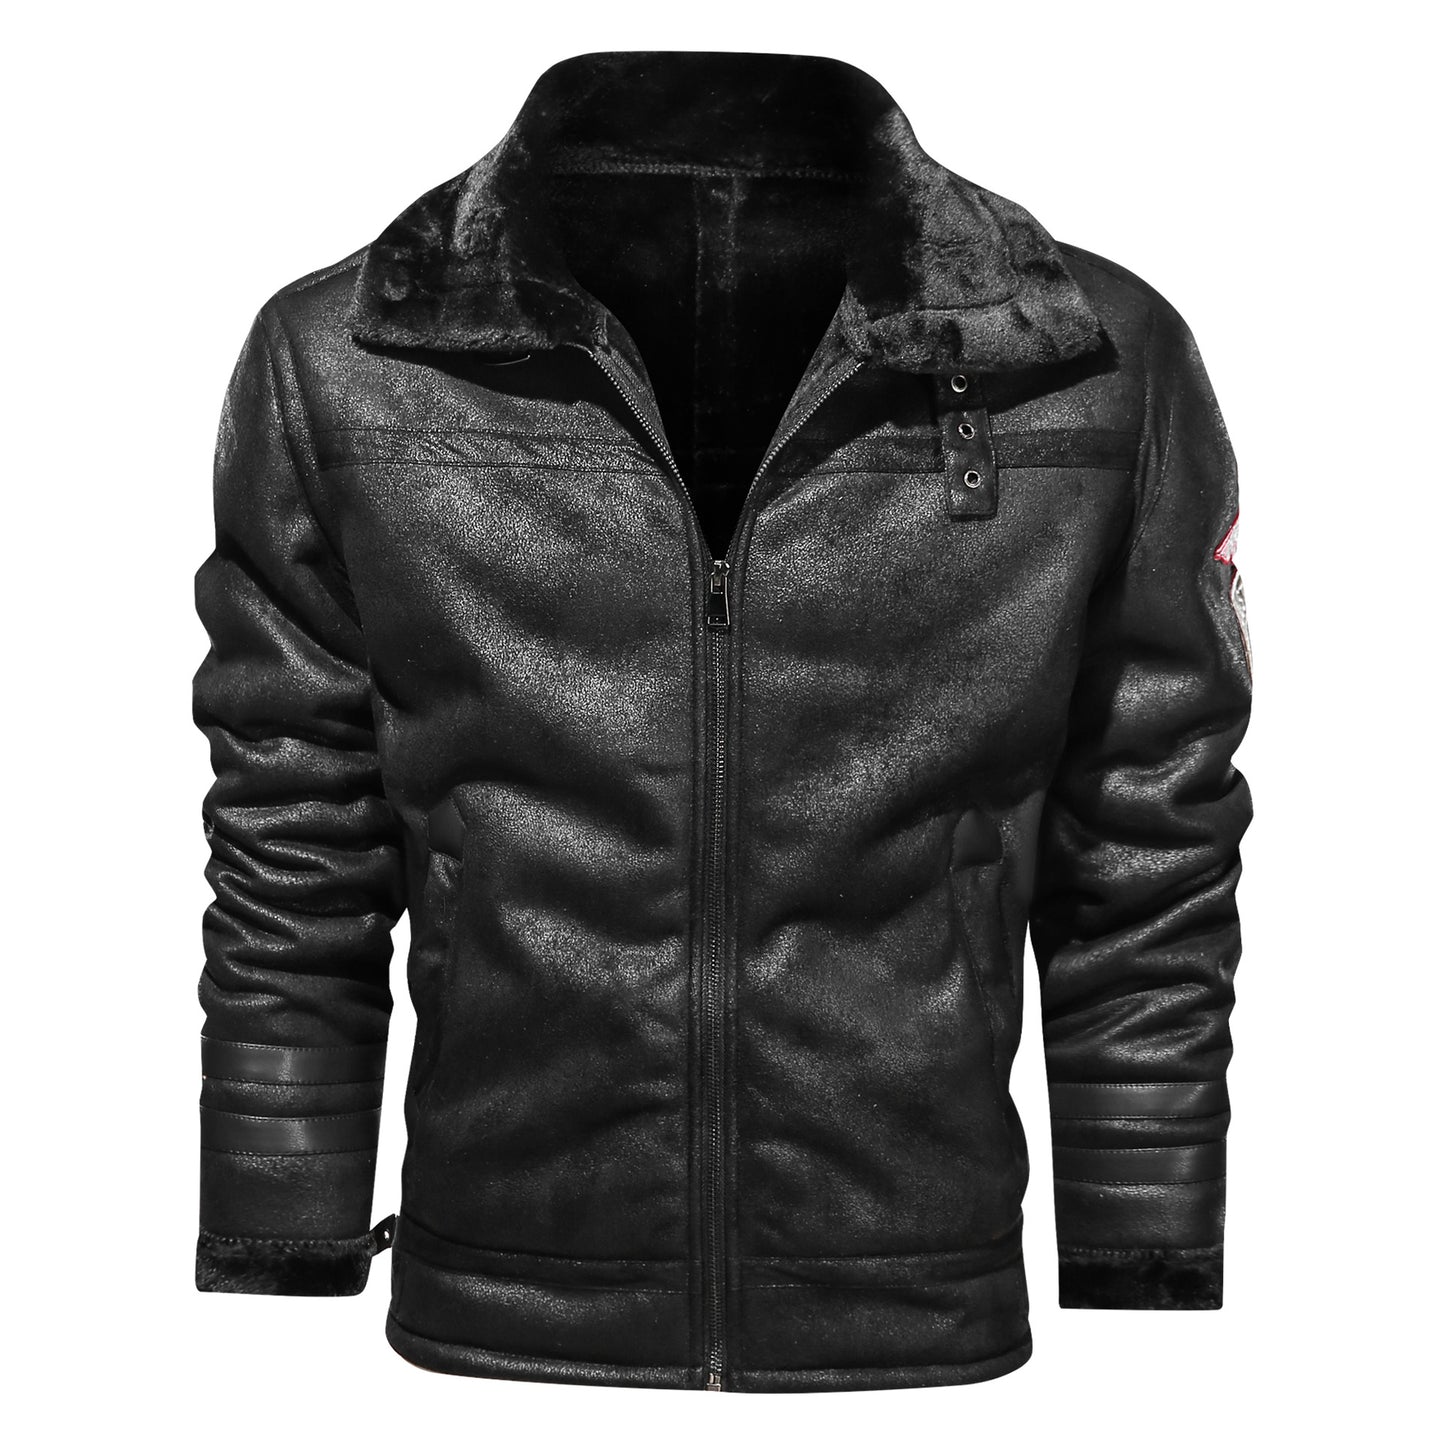 NS Stalwart Leather Jacket